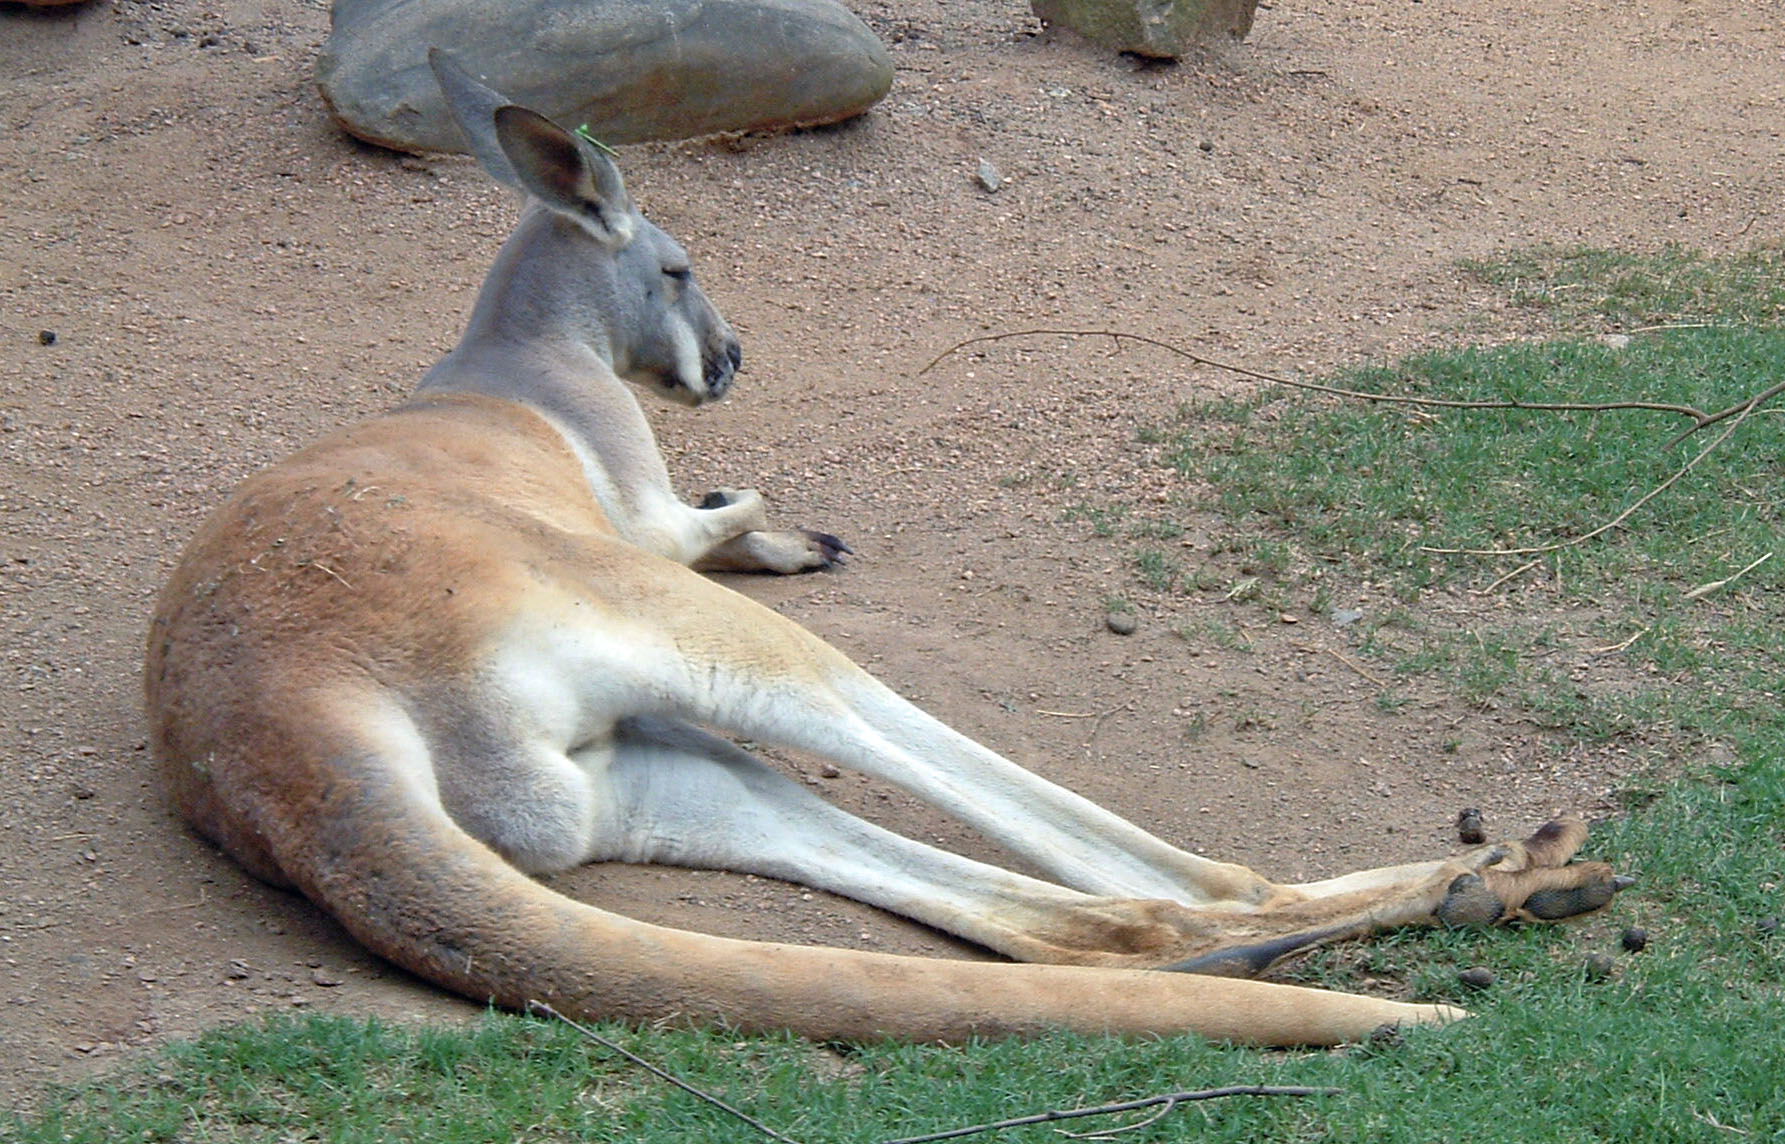 a kangaroo laying down next to two other kangaroos